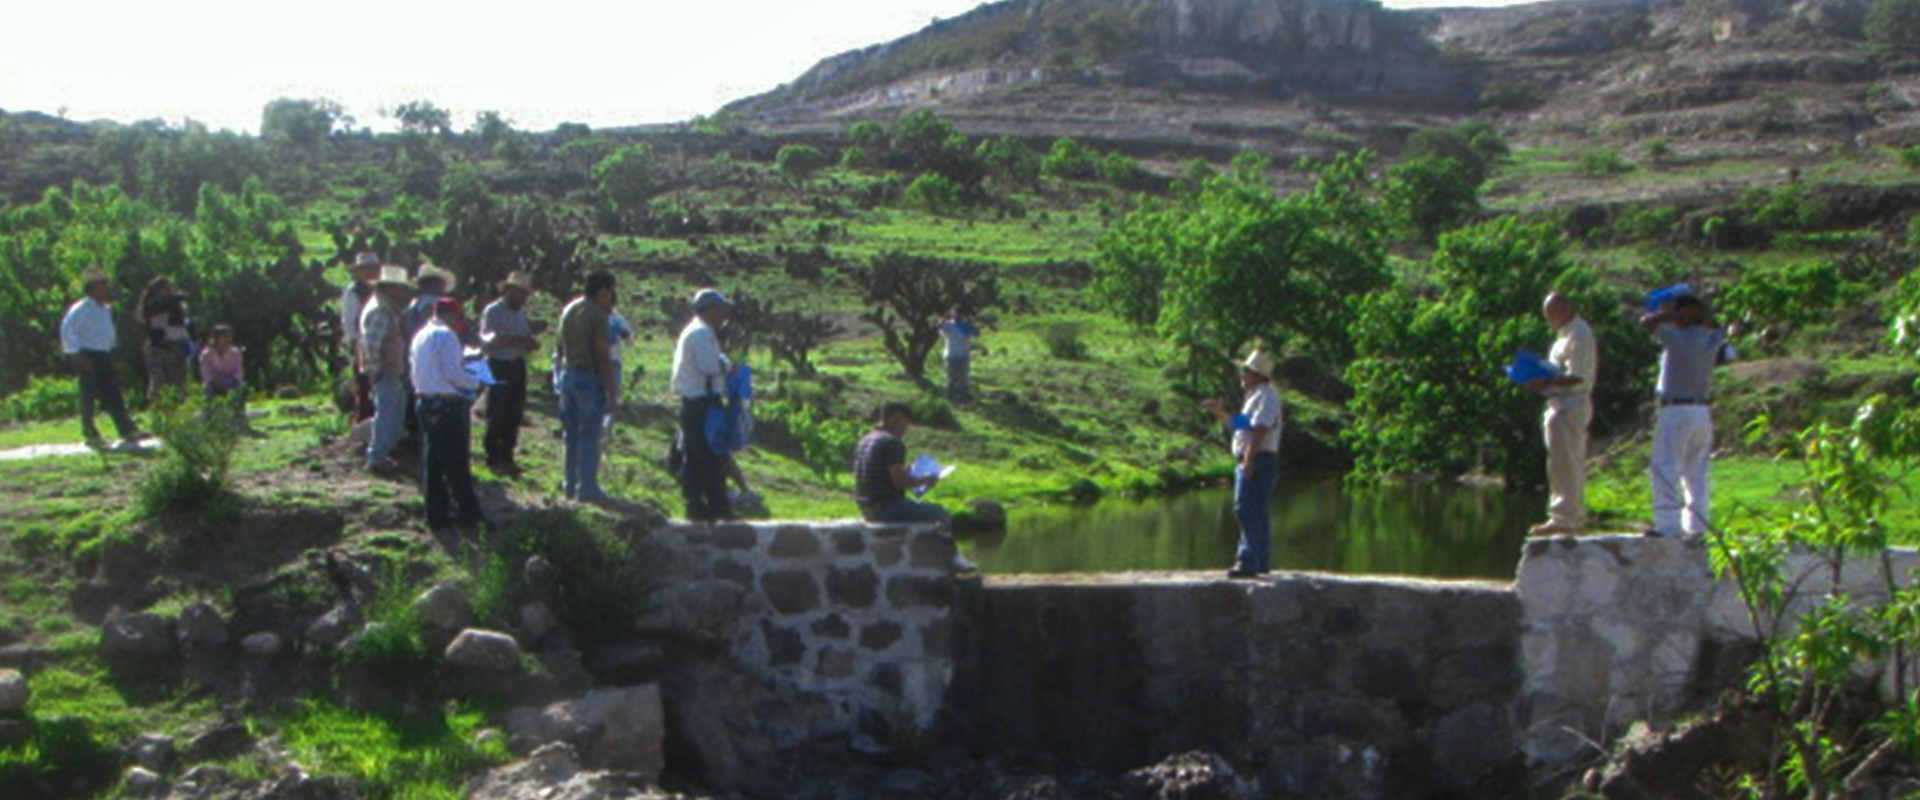 Visita a Campo en Región Mixteca, Siembra de Amaranto, Regeneración de Cuencas